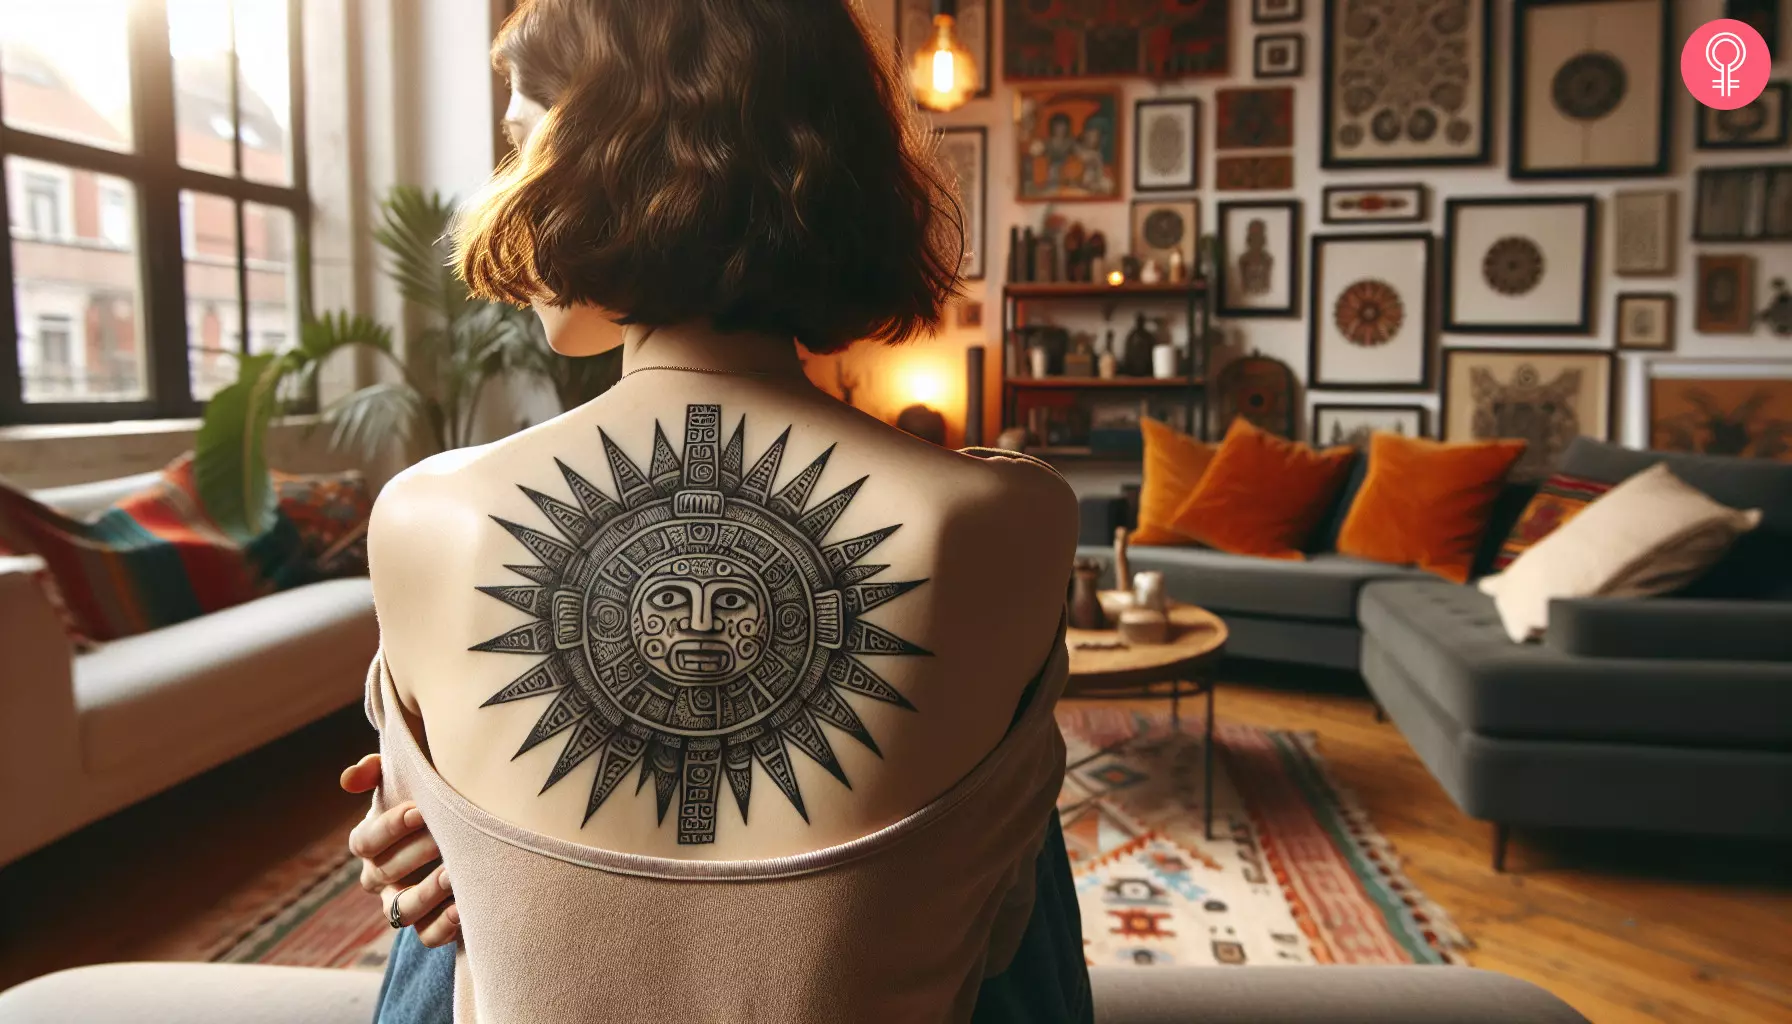 Mayan sun tattoo on a woman’s back